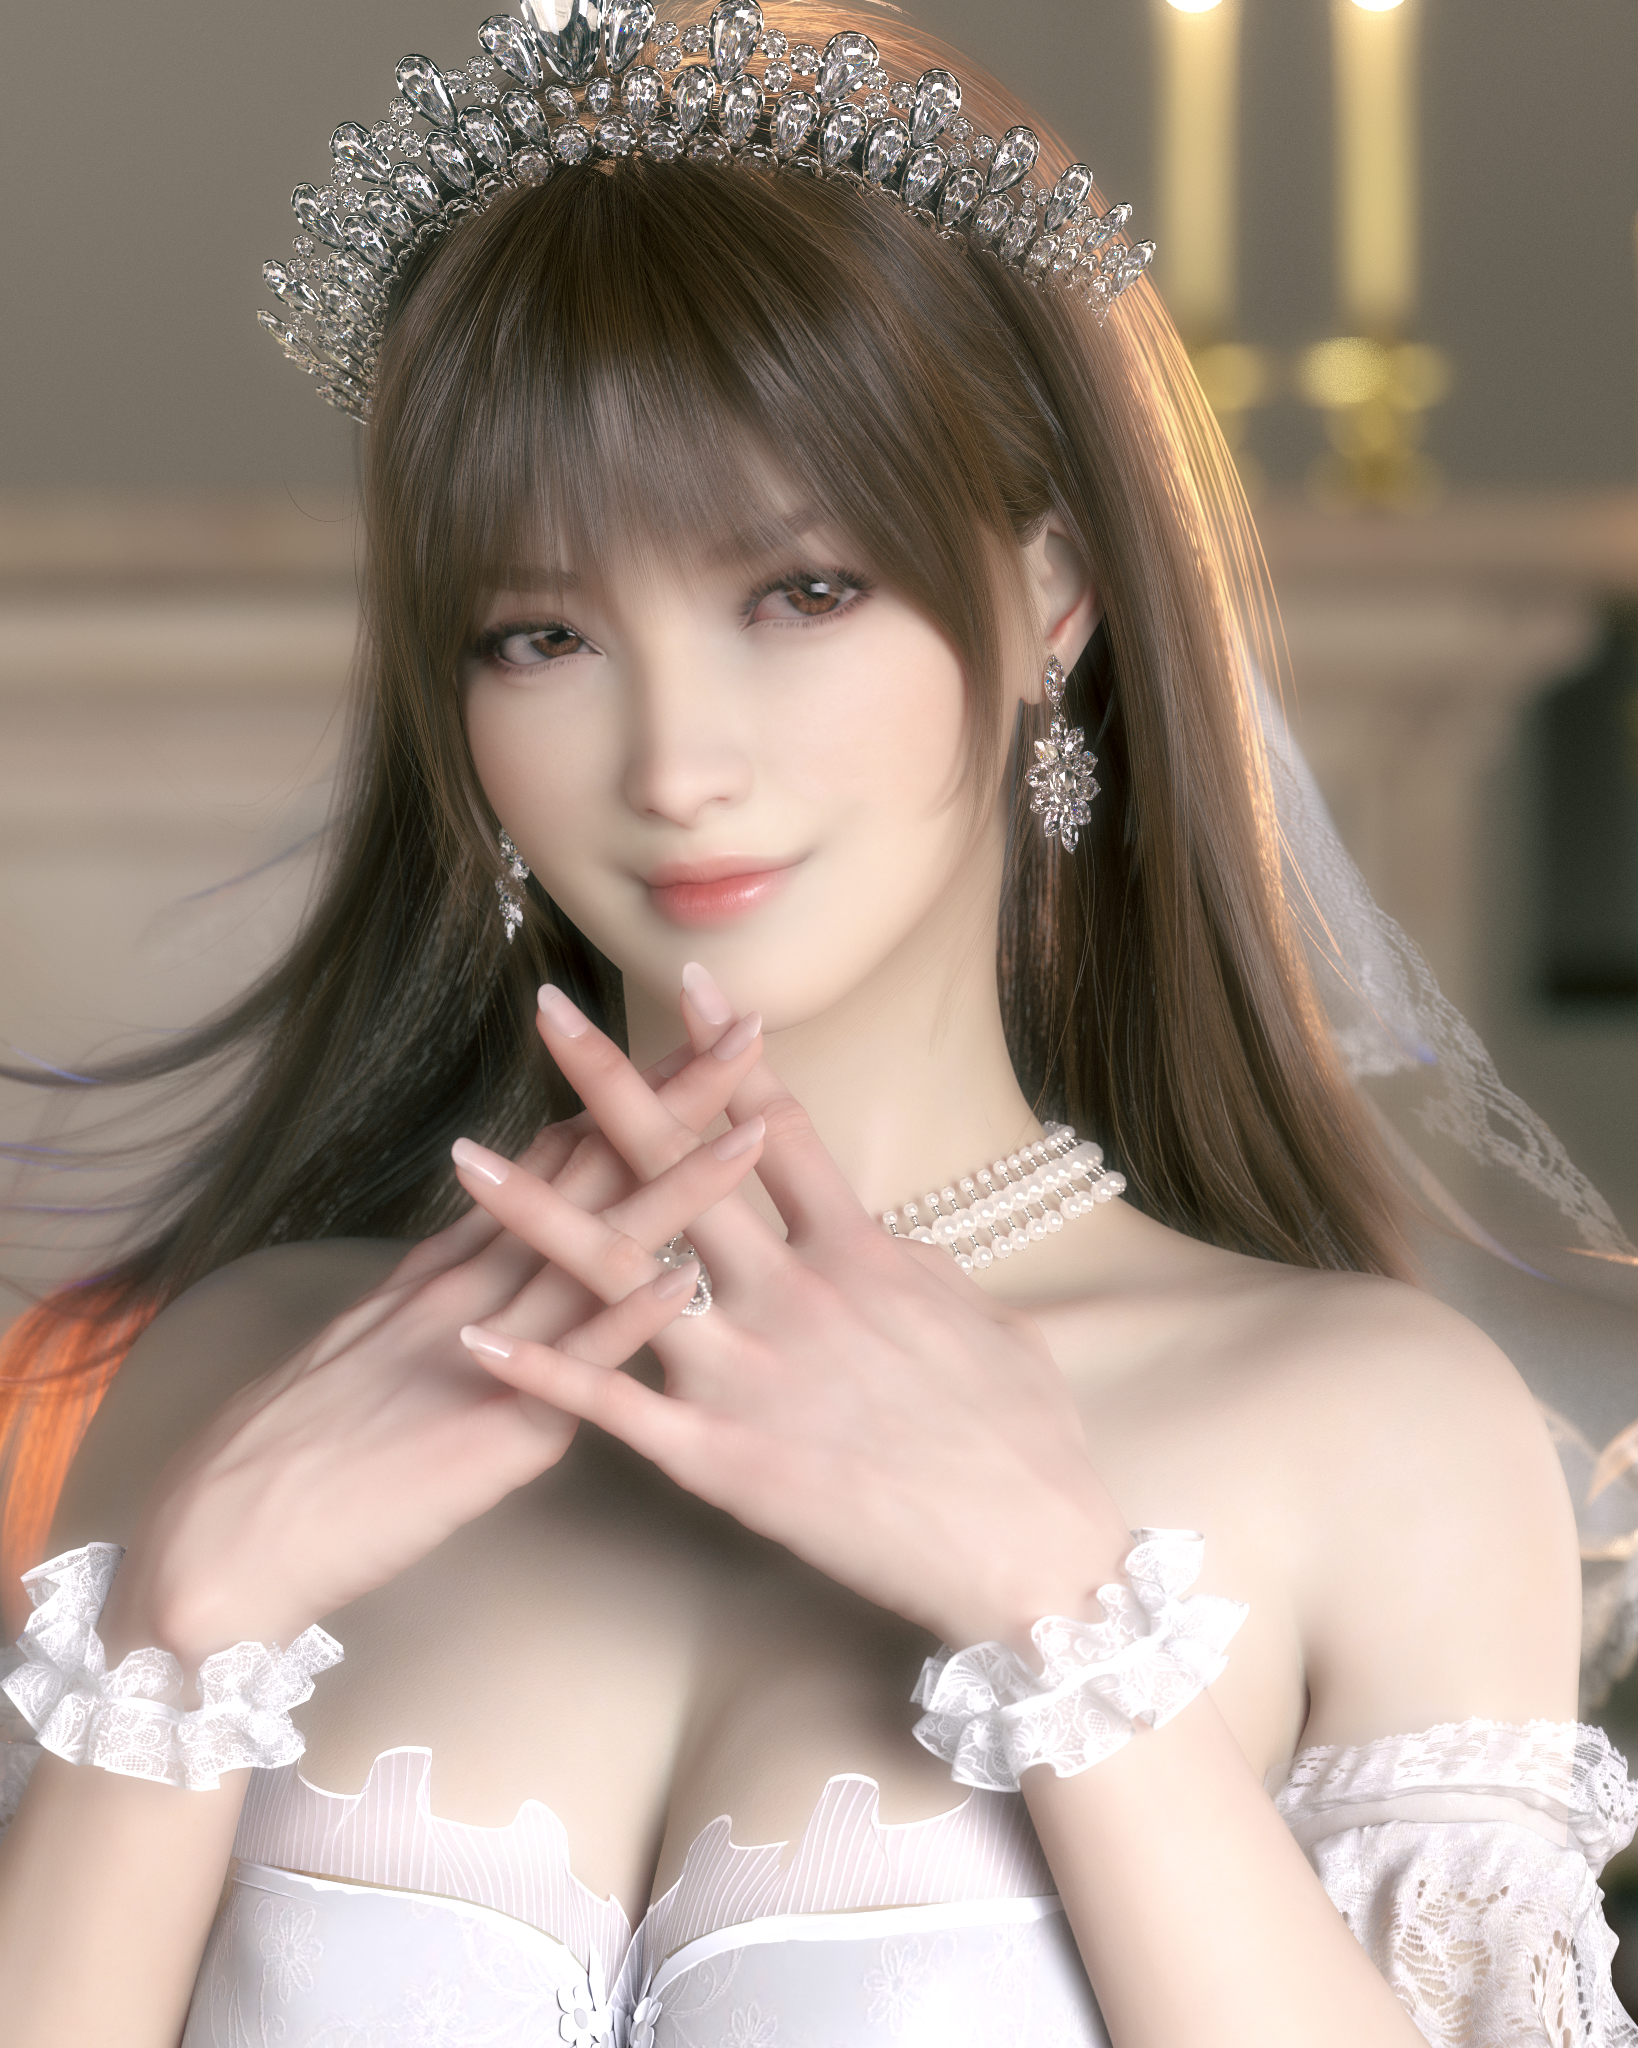 Anime 1638x2048 Kasumi (Dead or Alive) hxwxrf CGI video game girls video game characters Dead or Alive wedding dress portrait display